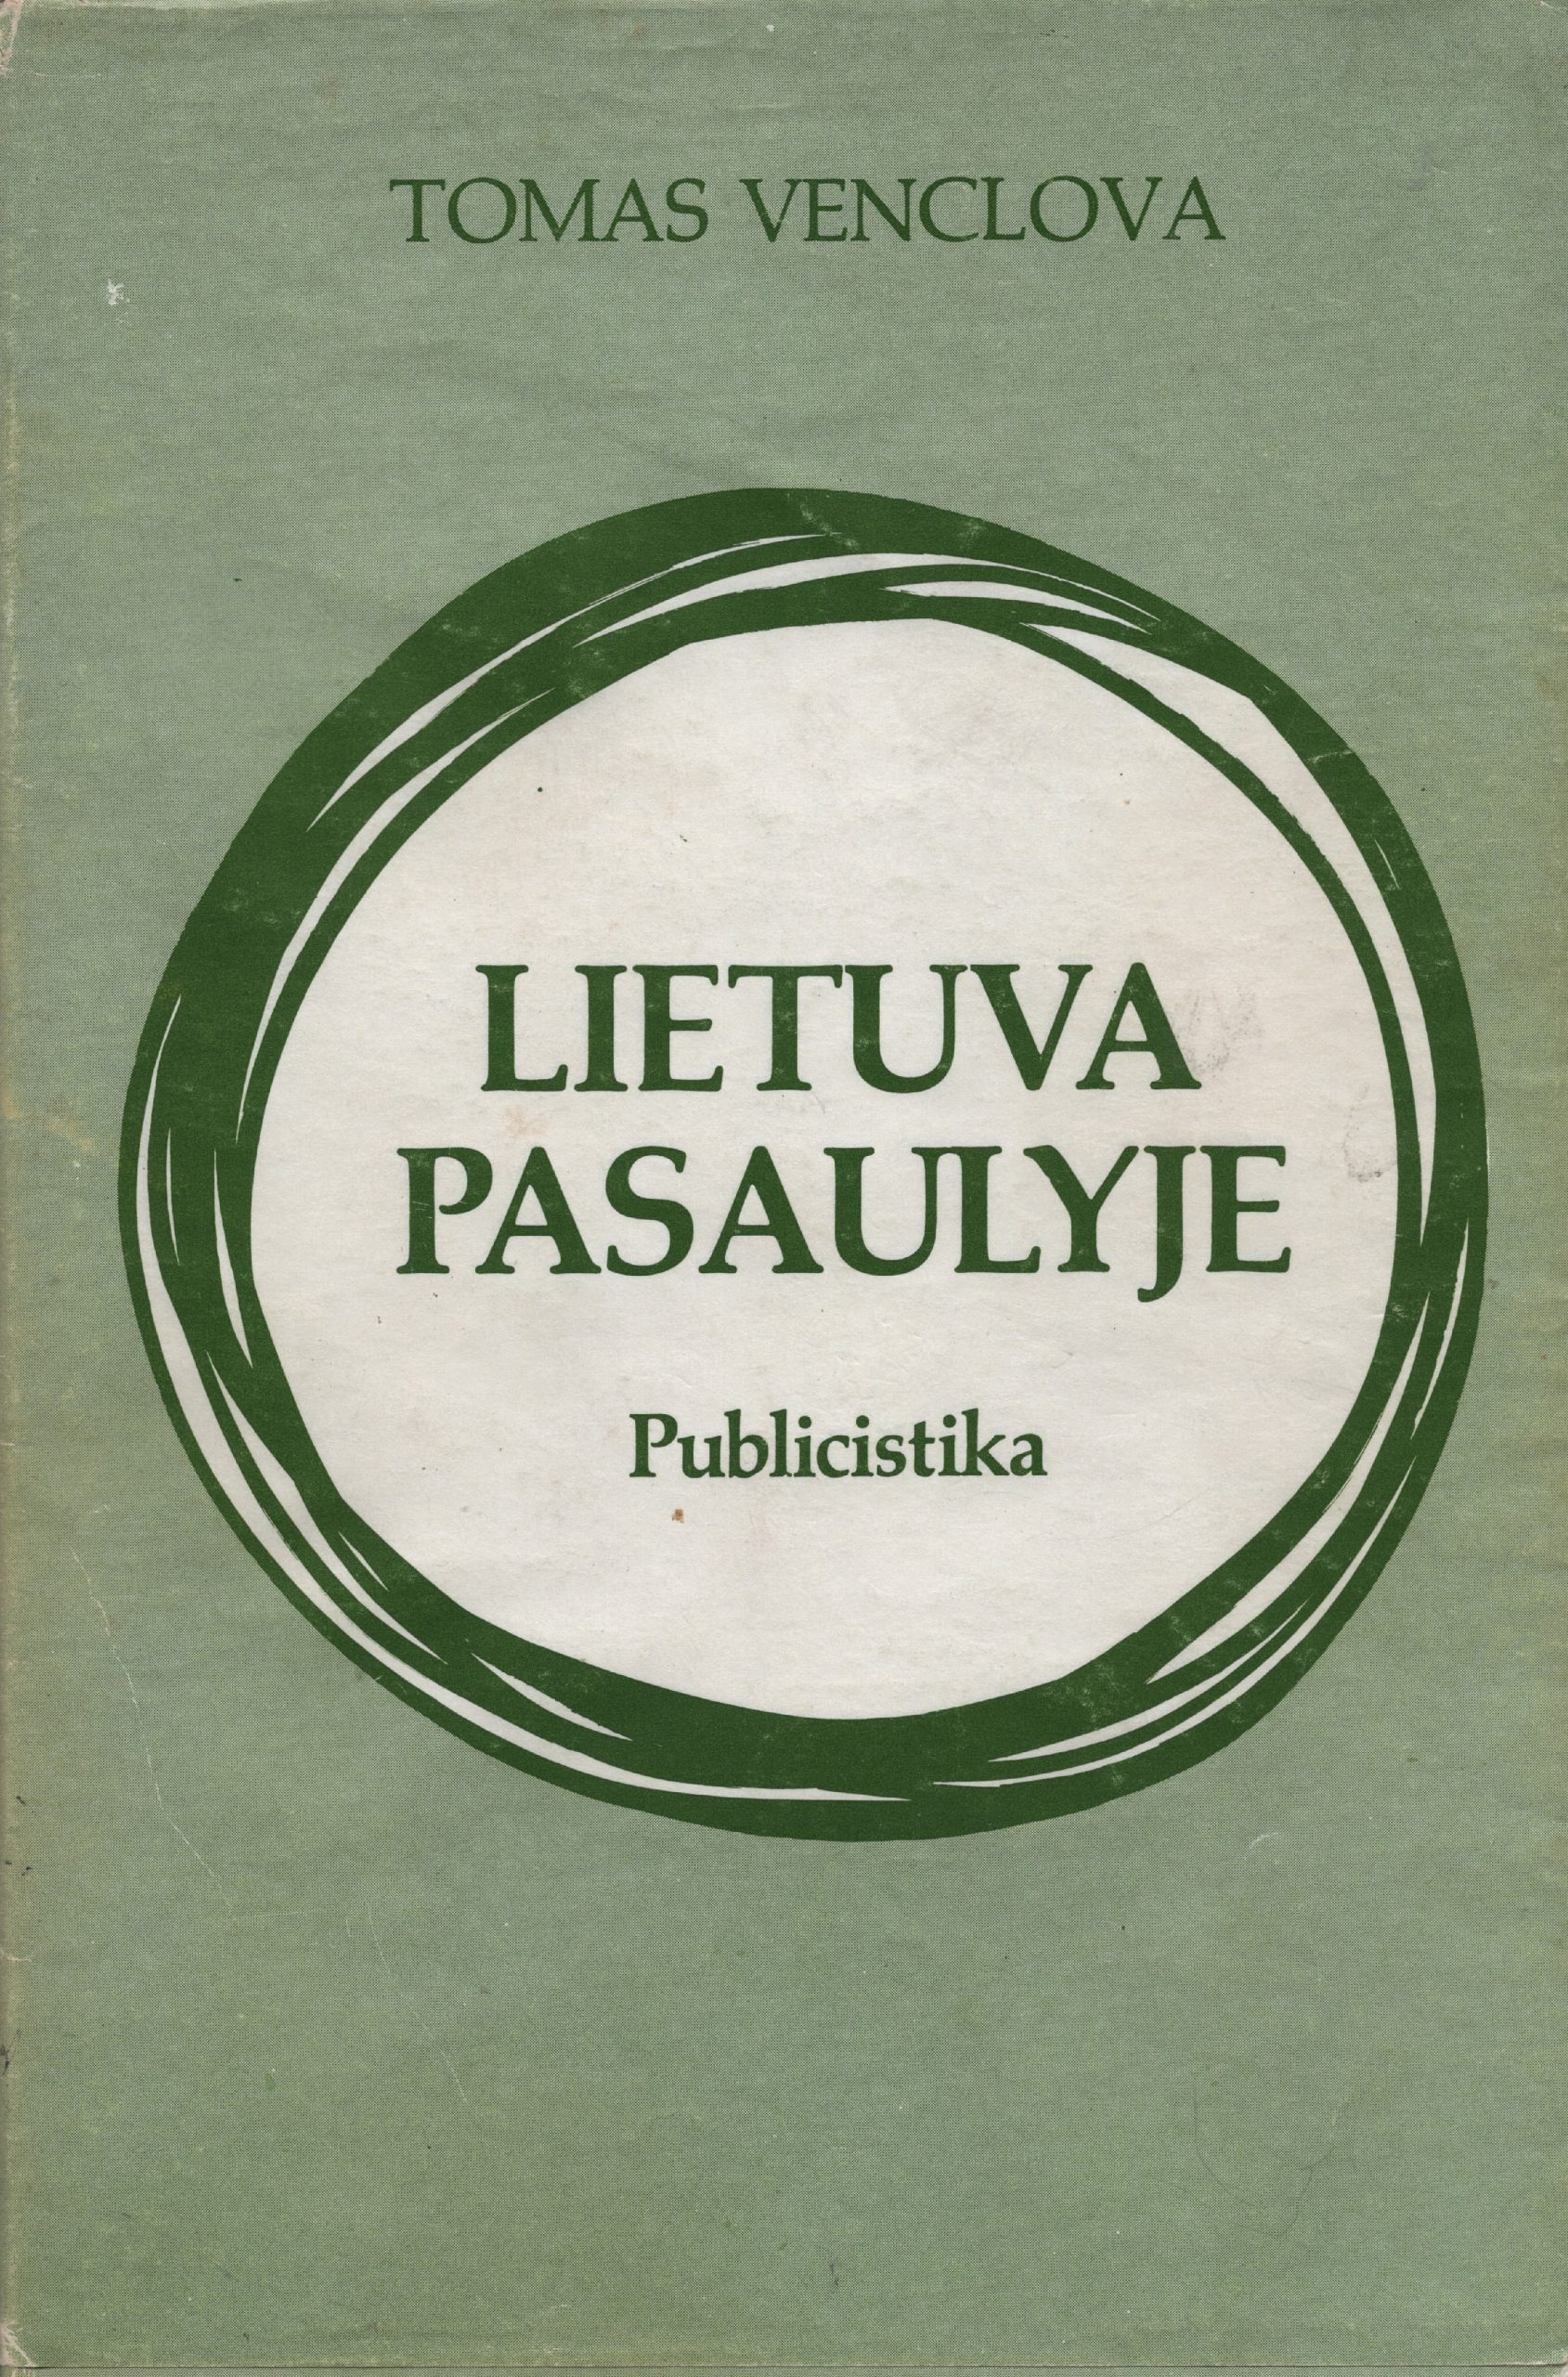 T. Venclovos publicistikos knyga „Lietuva pasaulyje“. Čikaga, 1981 m. MLLM 90748 1